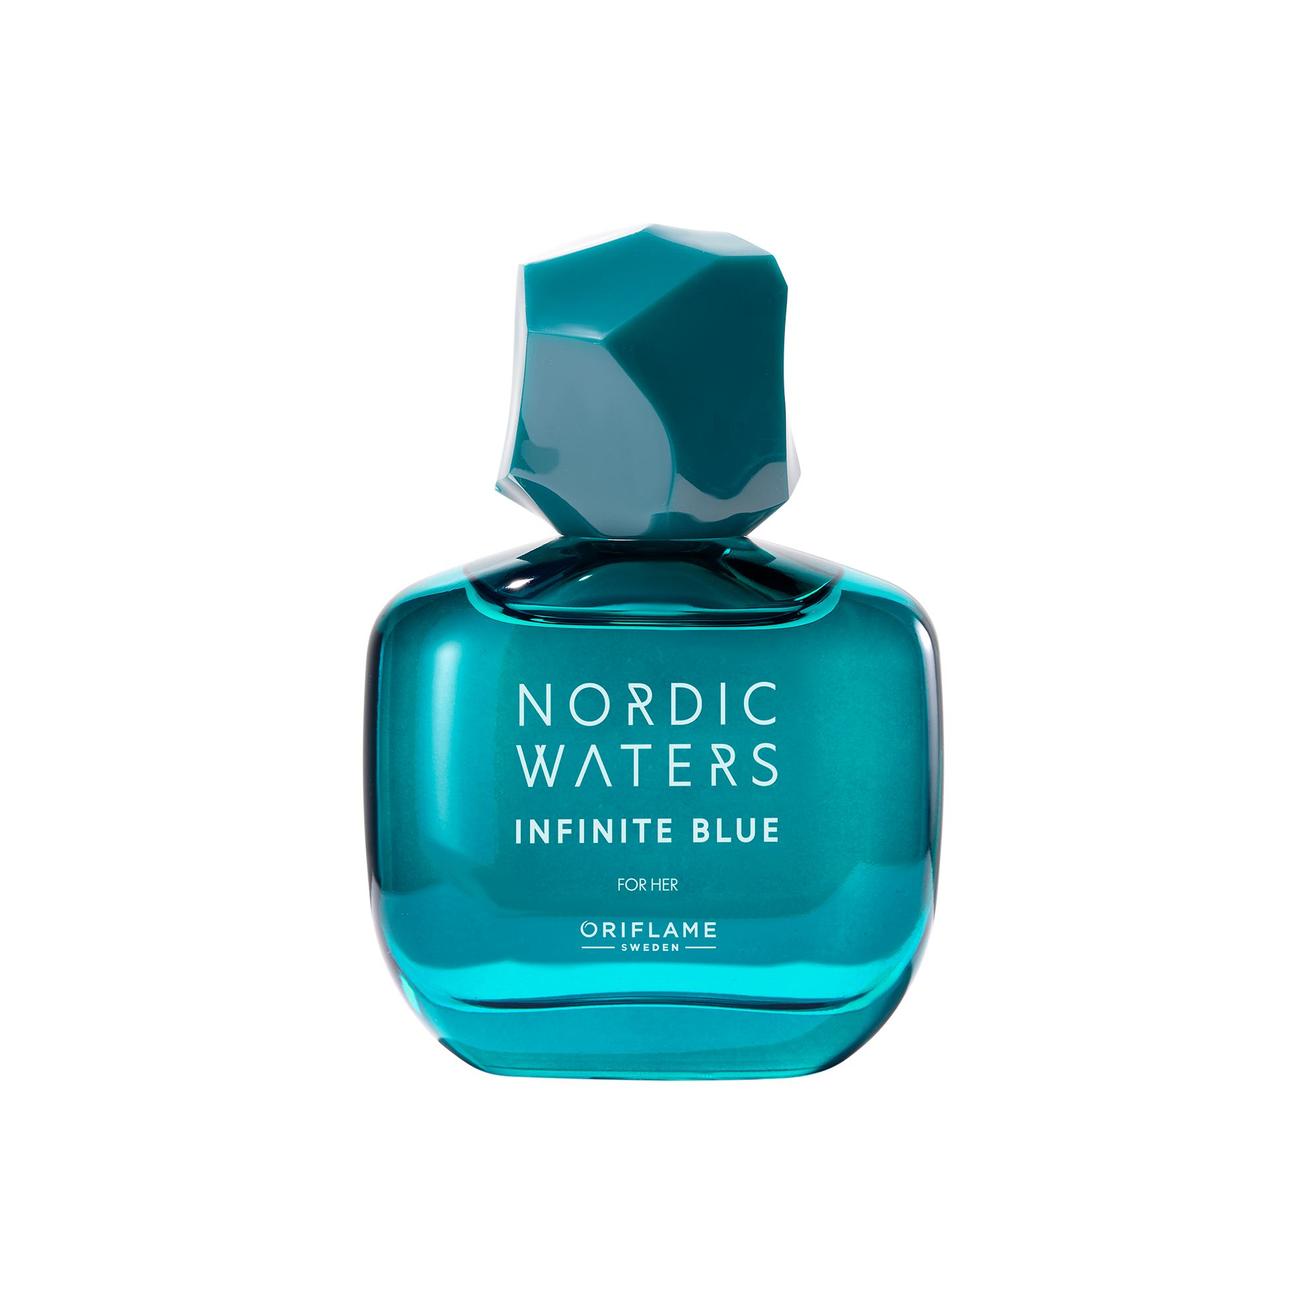 Tilbud: Infinite Blue for Her Eau de Parfum kr 369 på Oriflame